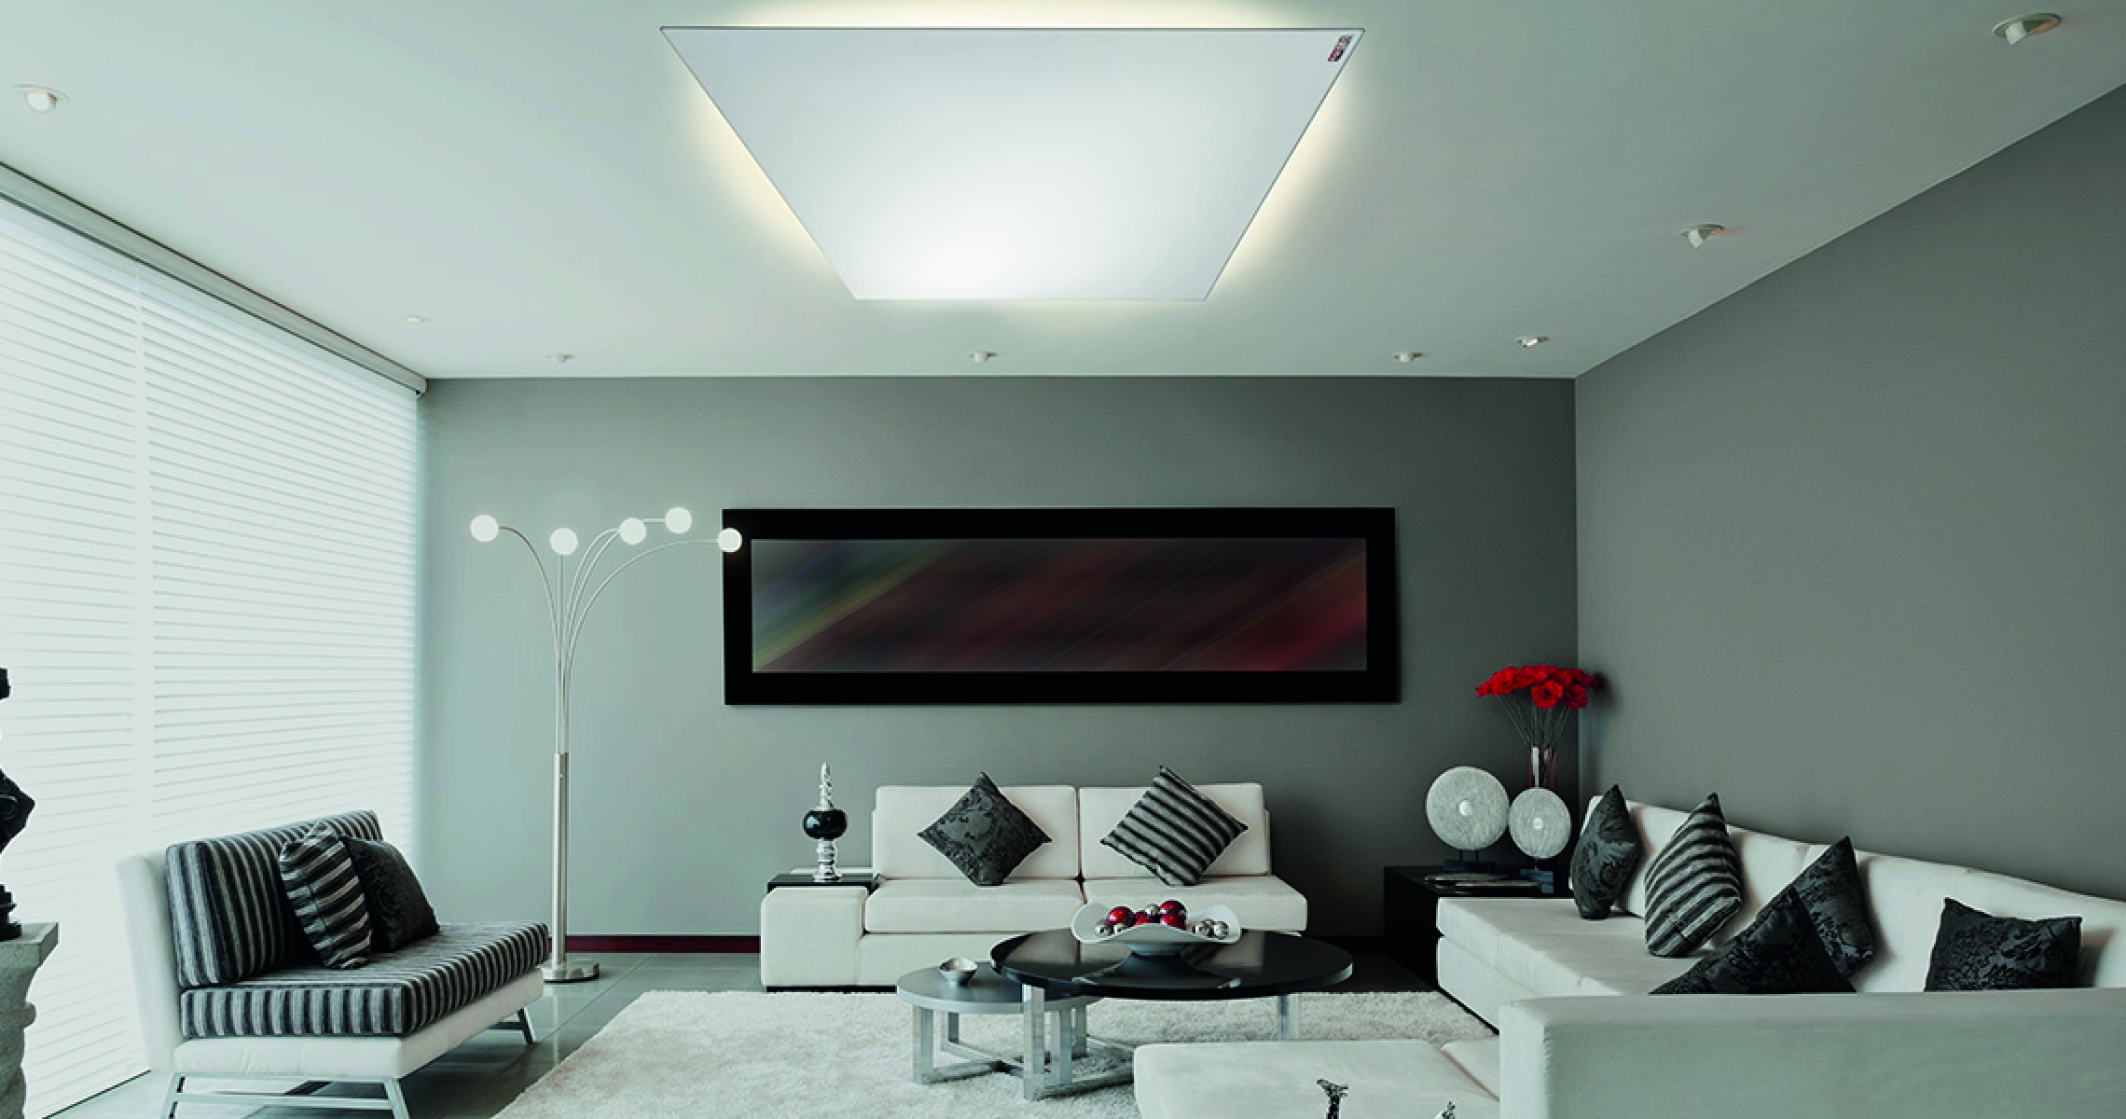 Infrarot-Heizungen: ein Wohnzimmer mit einer modernen Infrarot-Heizung über der Sitzecke. Eine Heizung an der Wand kombiniert mit einem LED-Rahmen ...